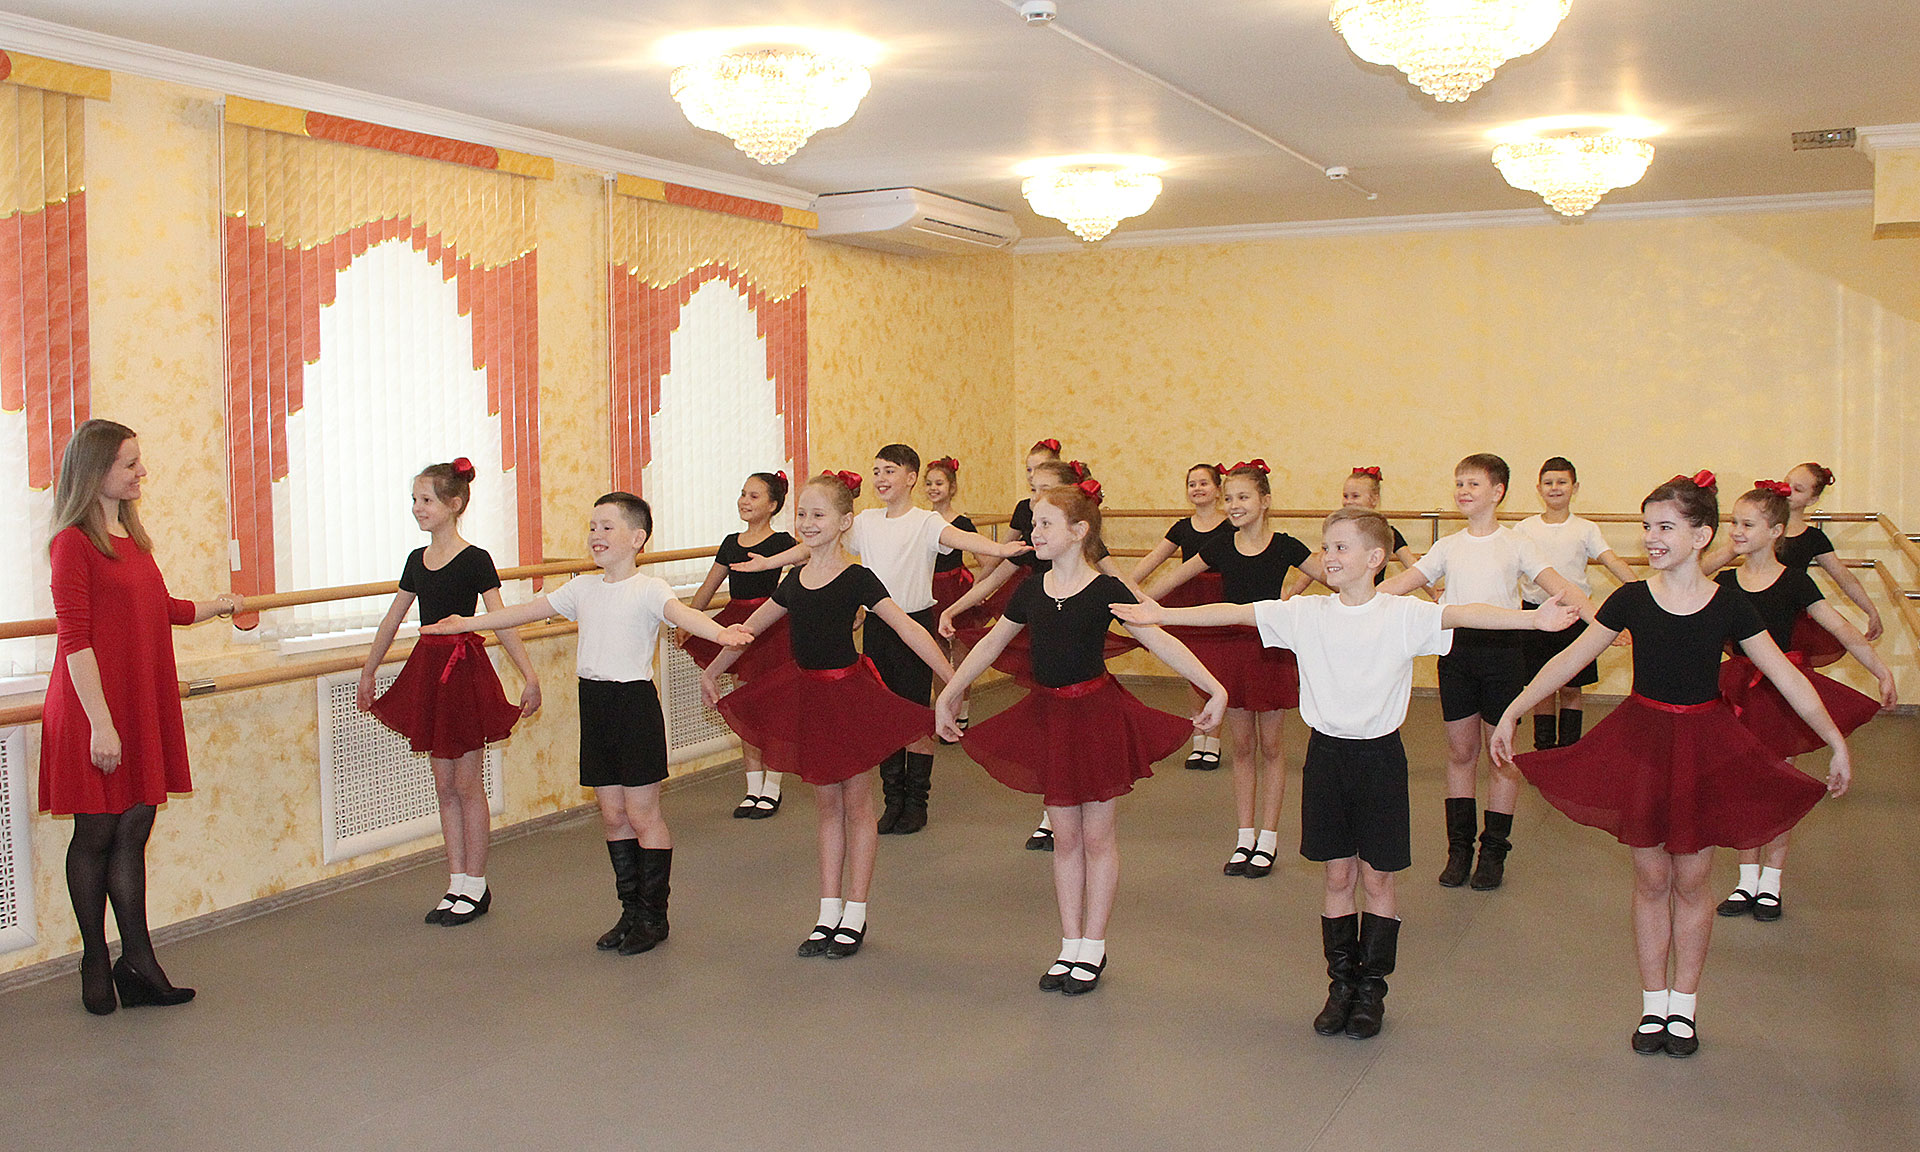 В ознаменование Десятилетия детства в Брянской области открыта детская школа хореографического искусства